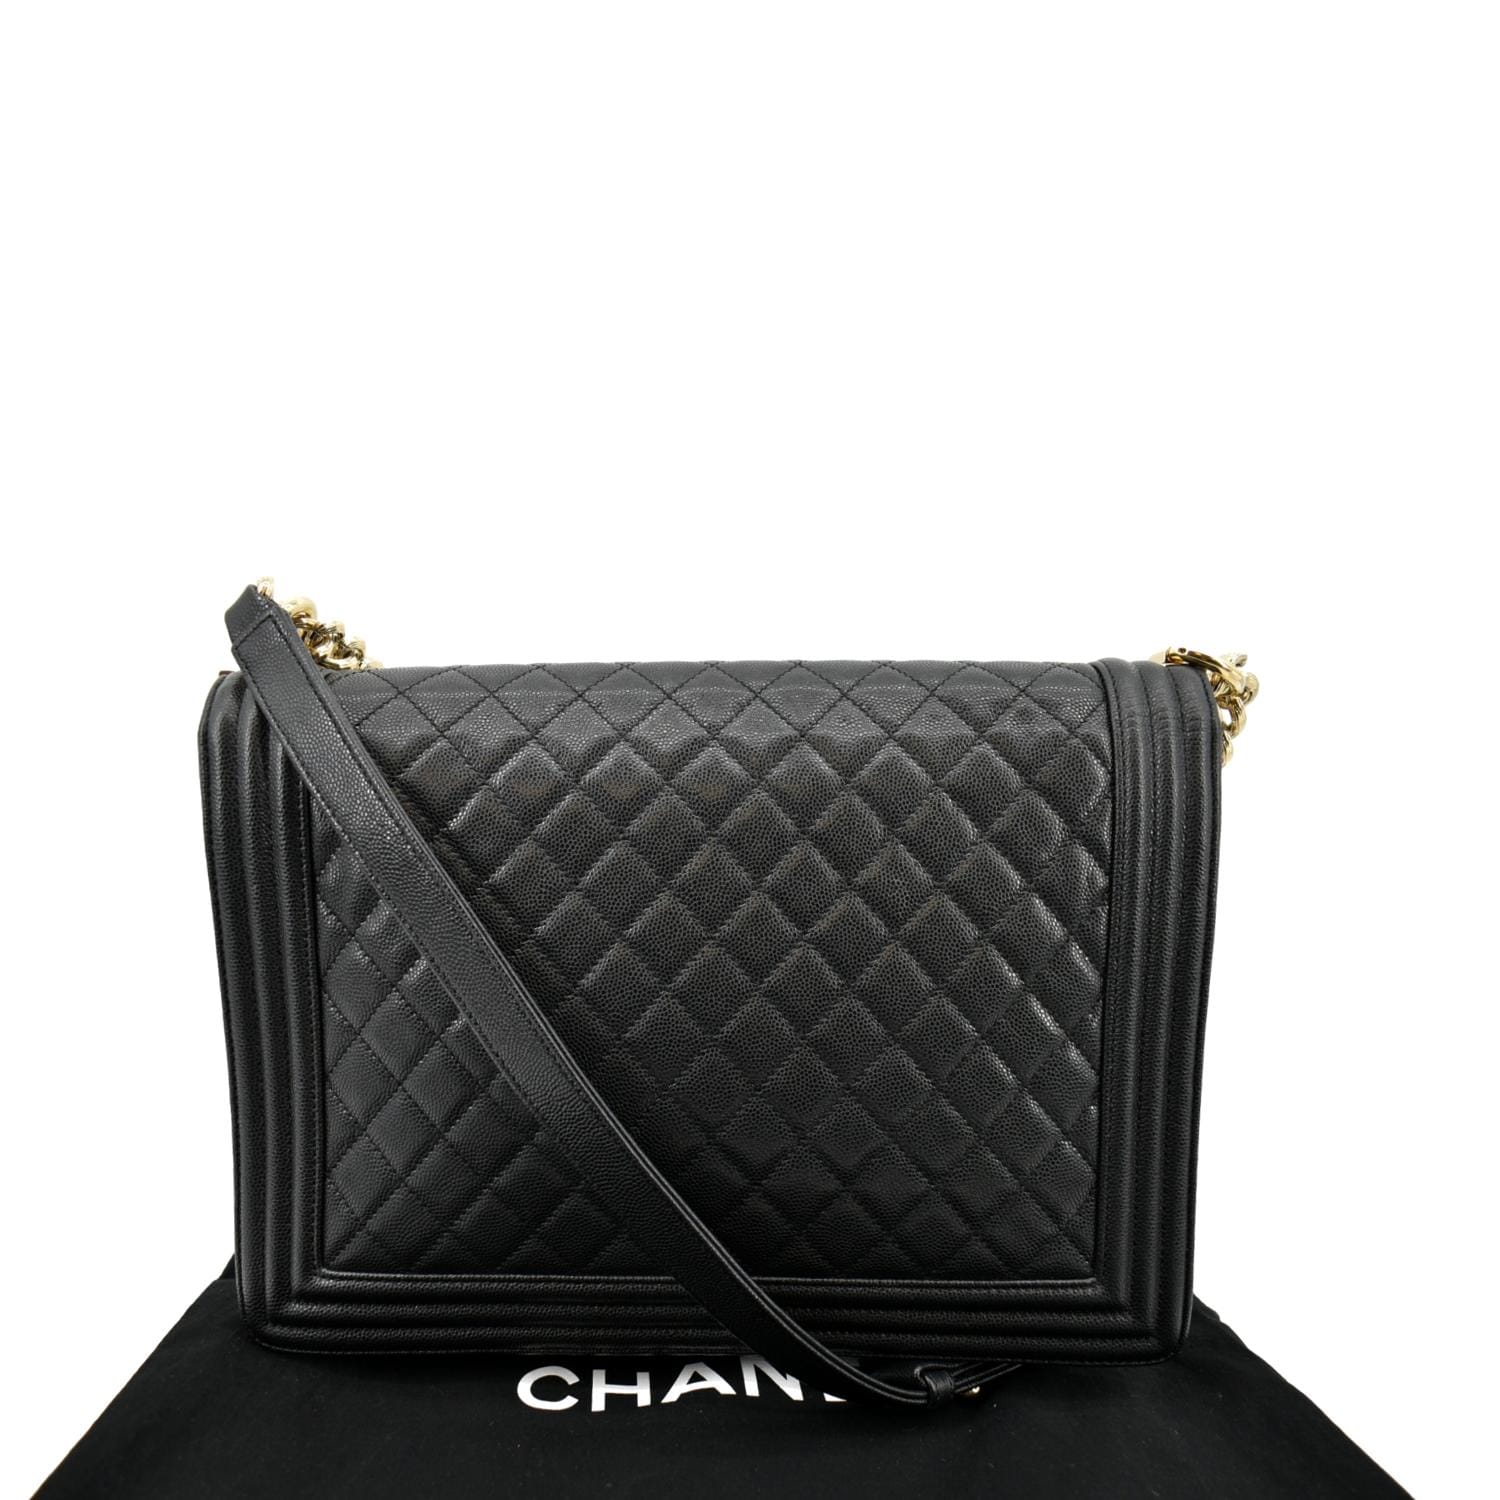 Chanel Large Boy Flap Caviar Leather Shoulder Bag Black